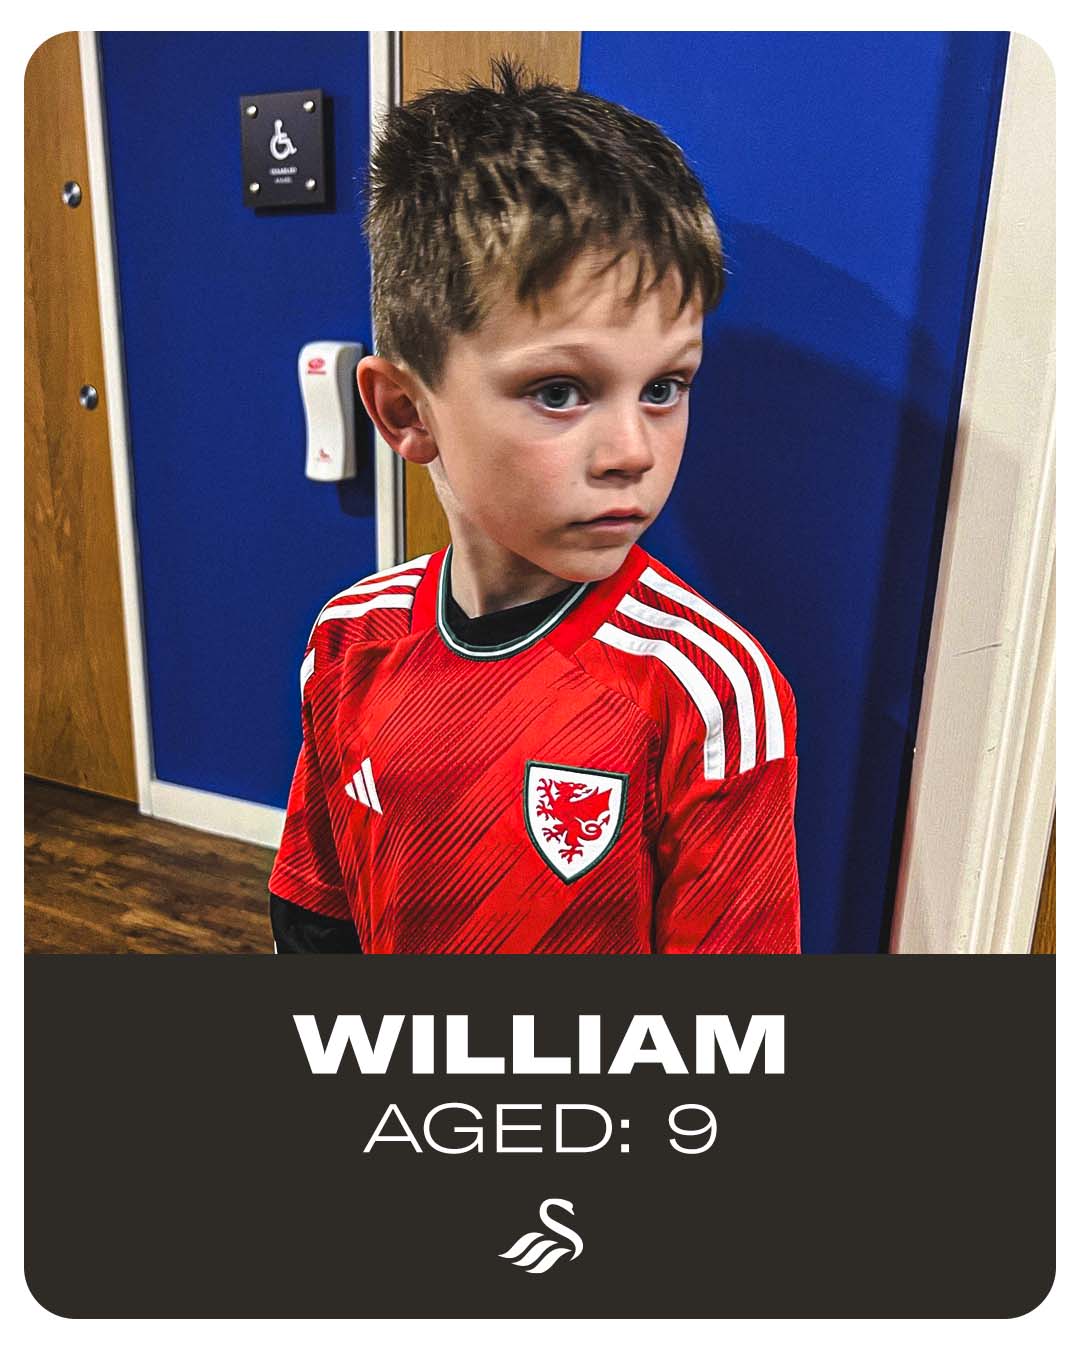 William, aged 9.